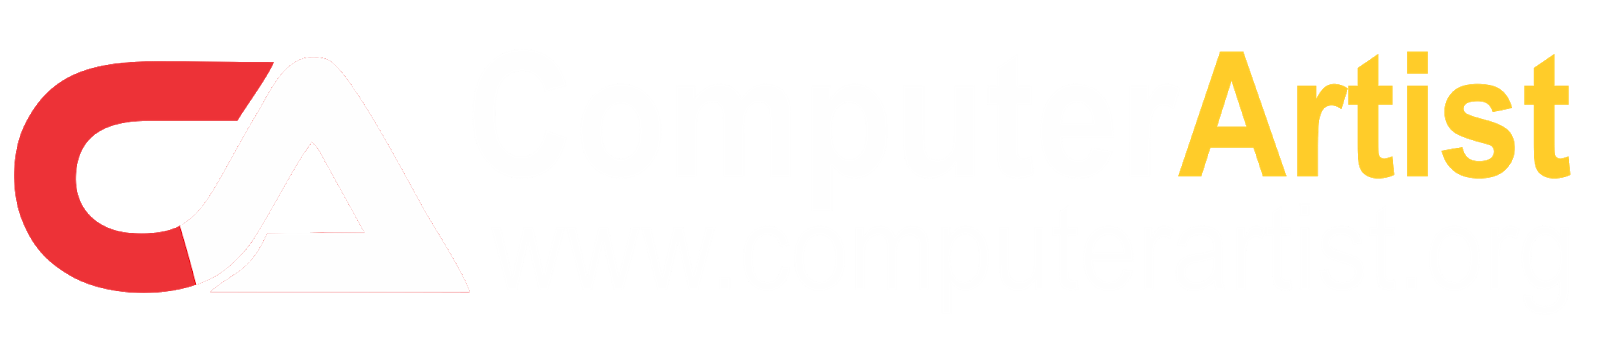 Computer Artist